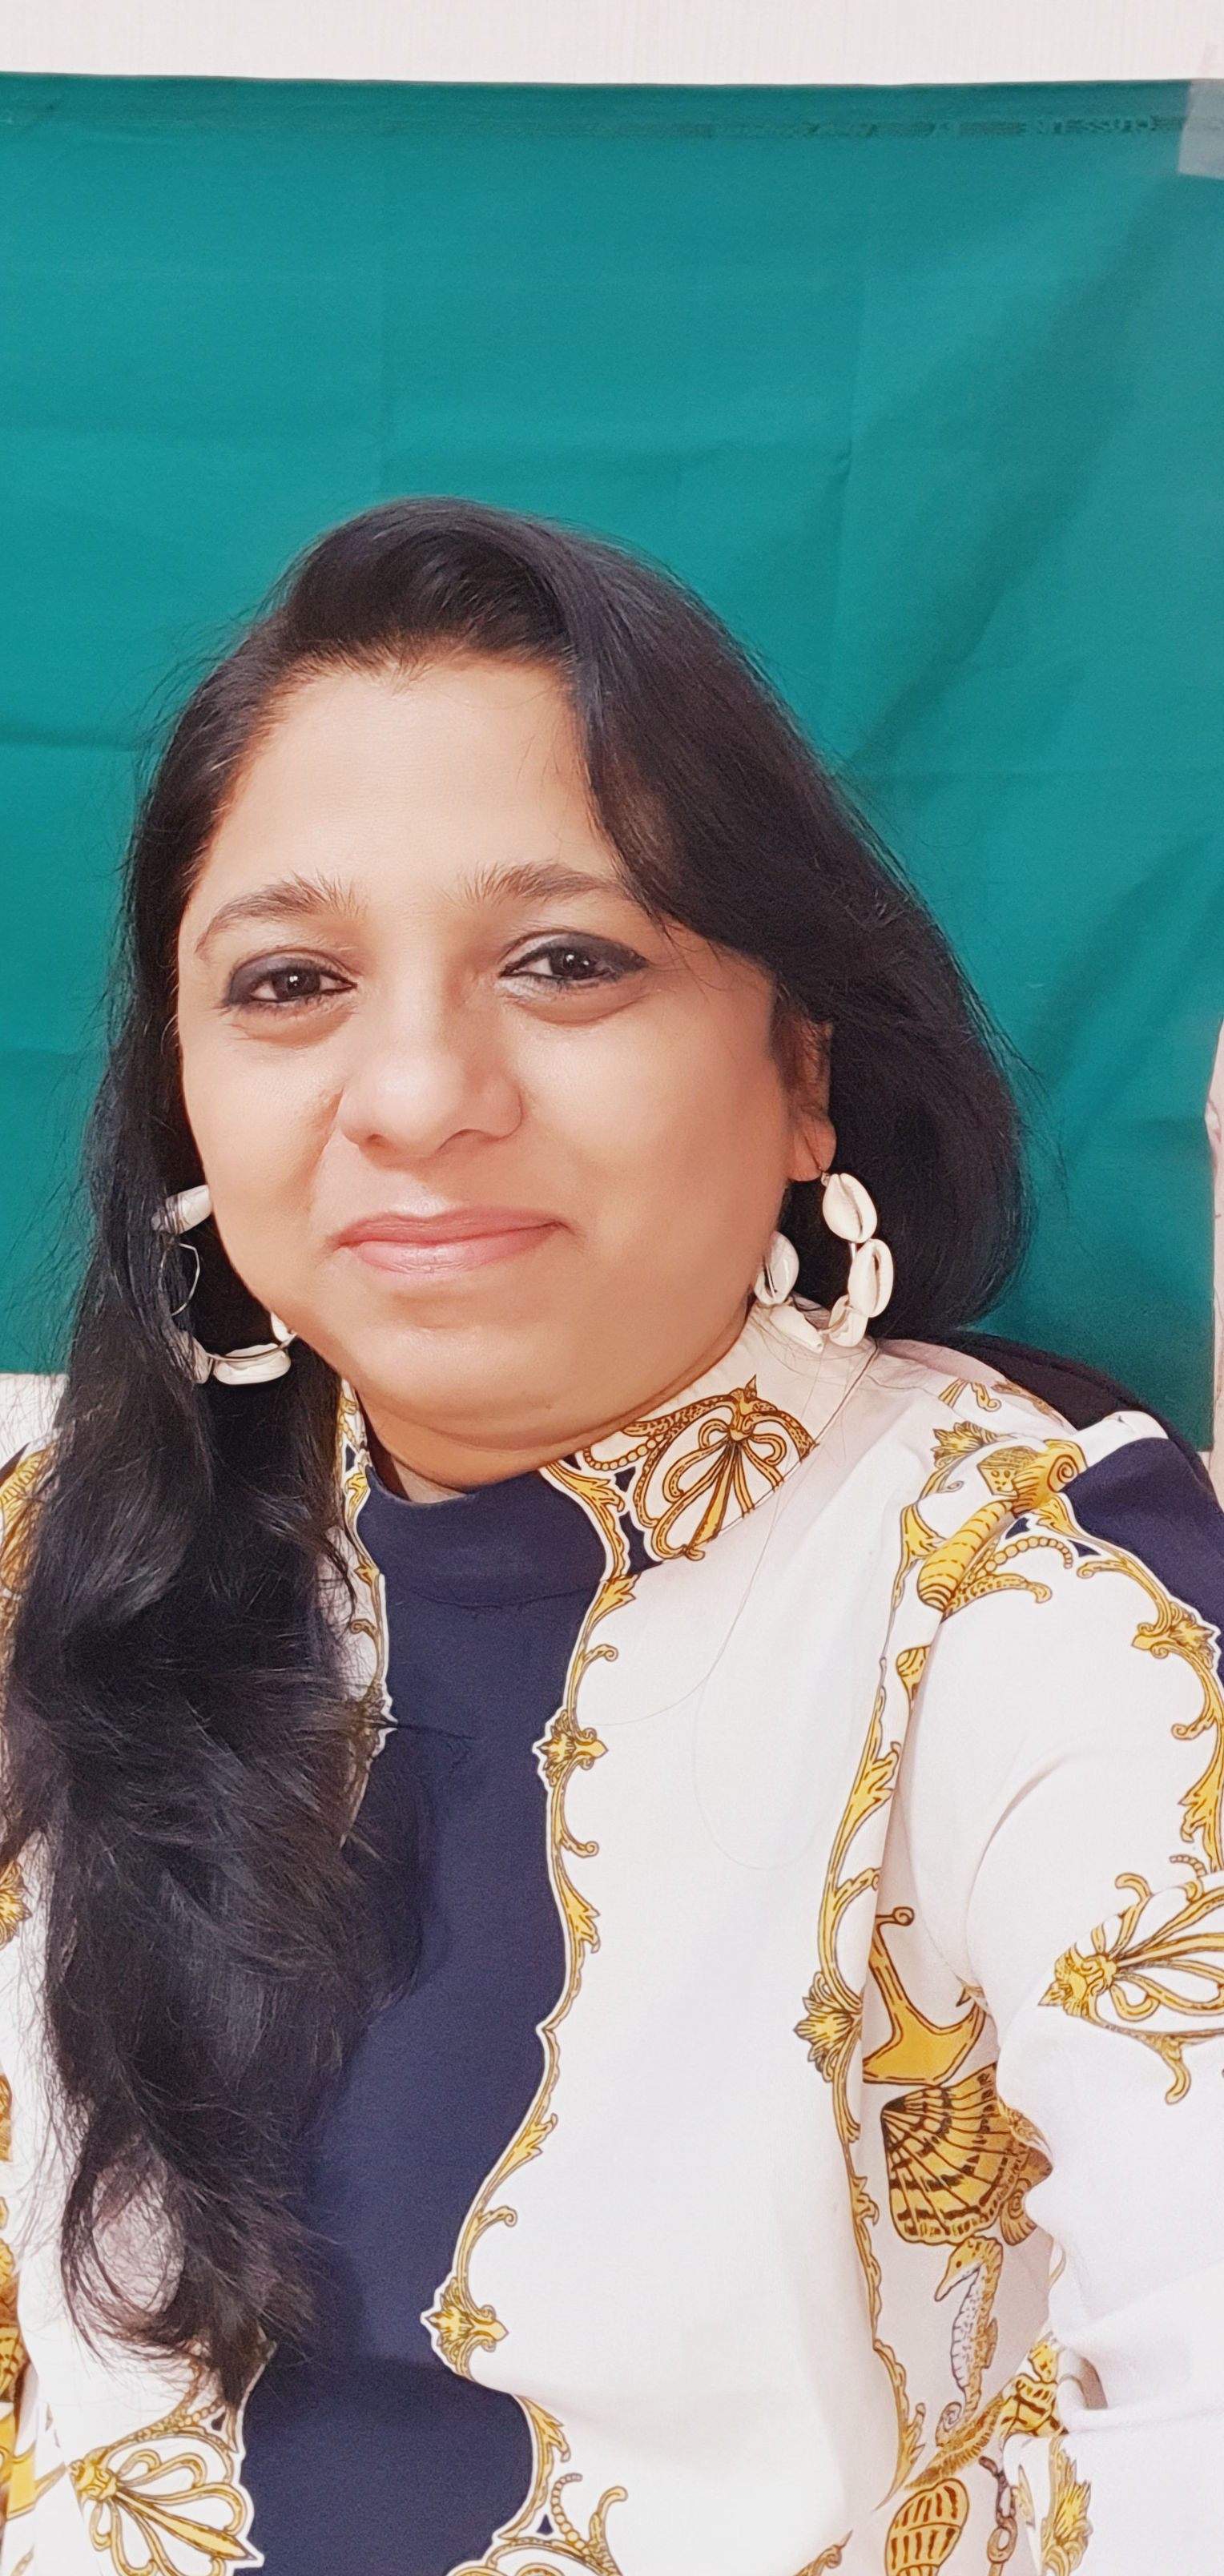 RashmiBagri's avatar